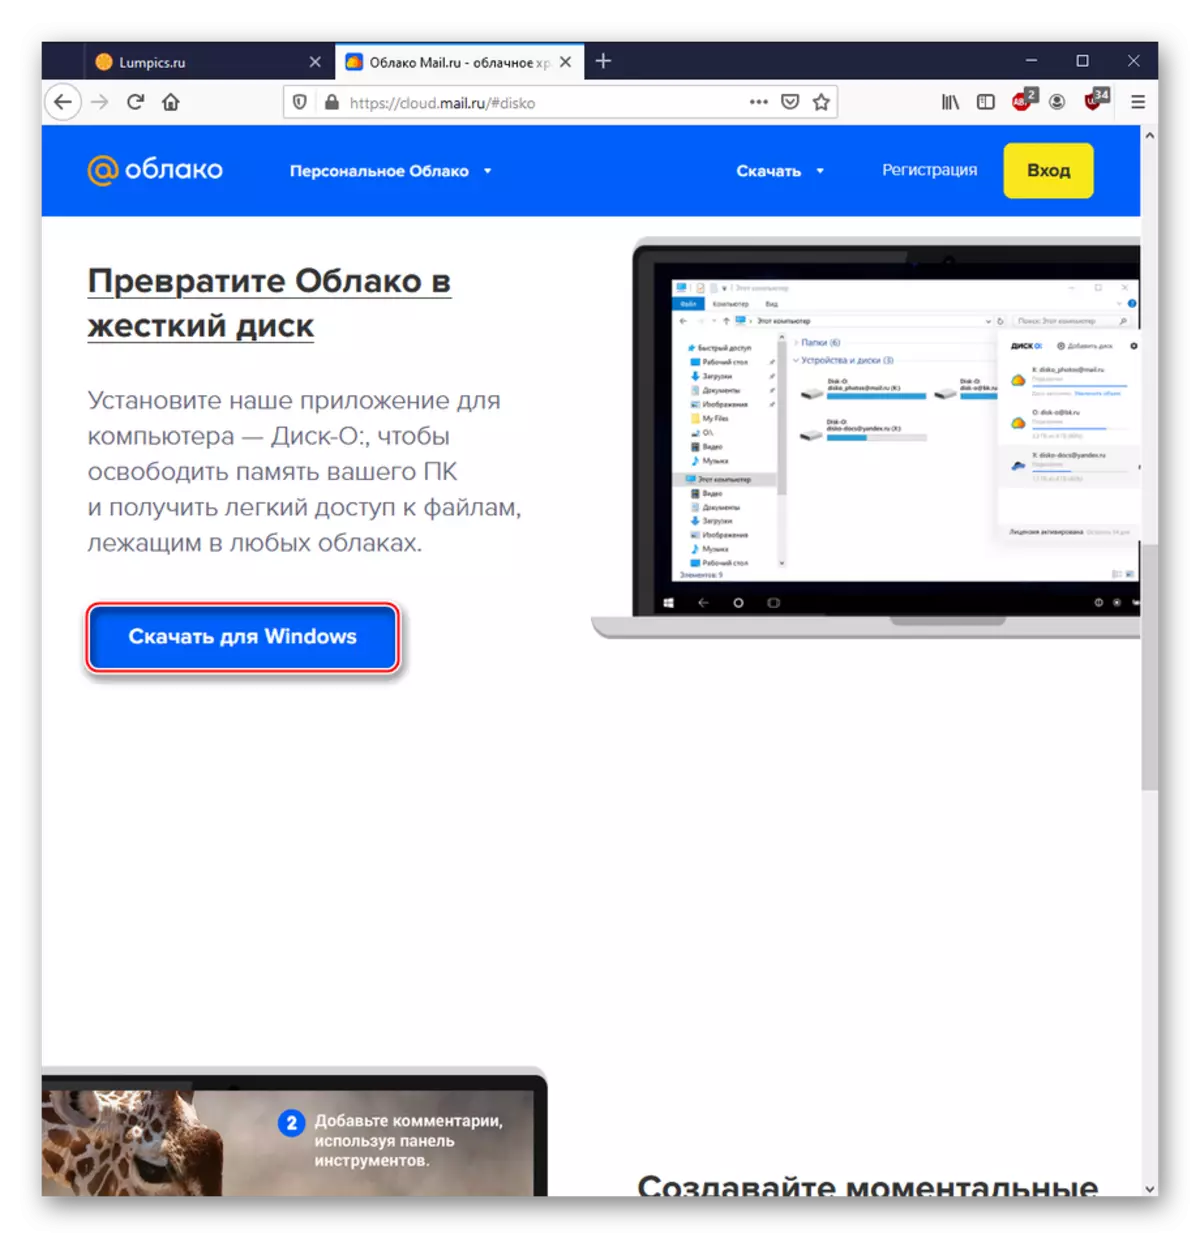 Baixant un programa de PC per treballar amb el servei núvol@mail.ru